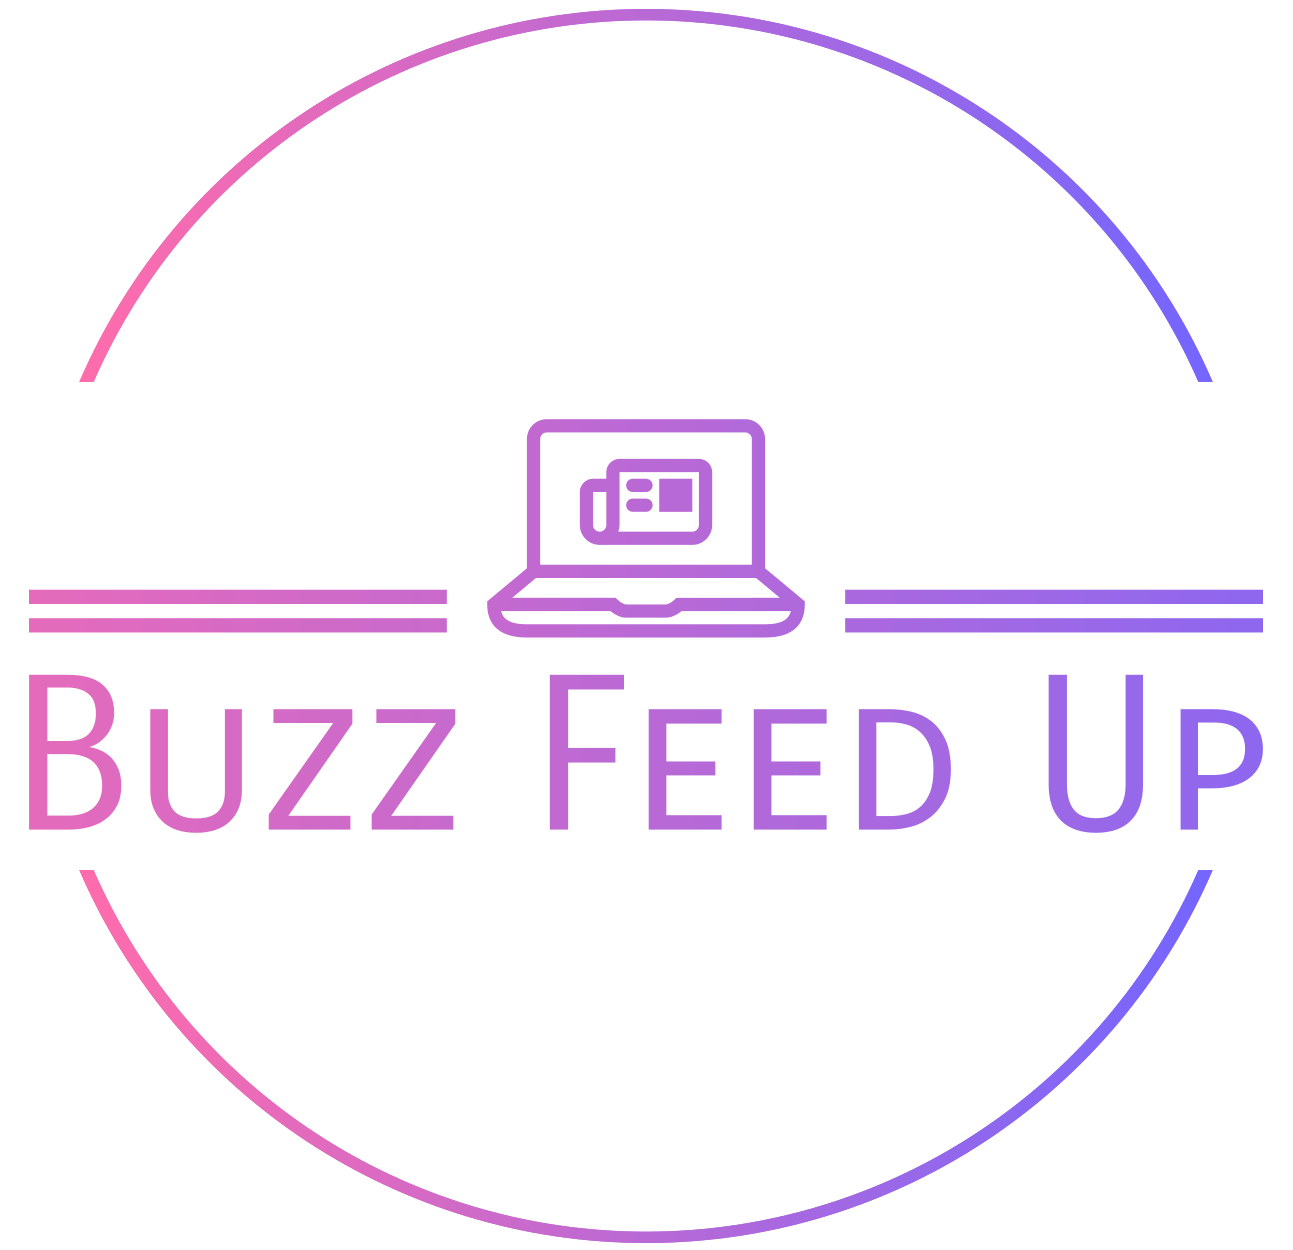 Buzz Feed Up logo